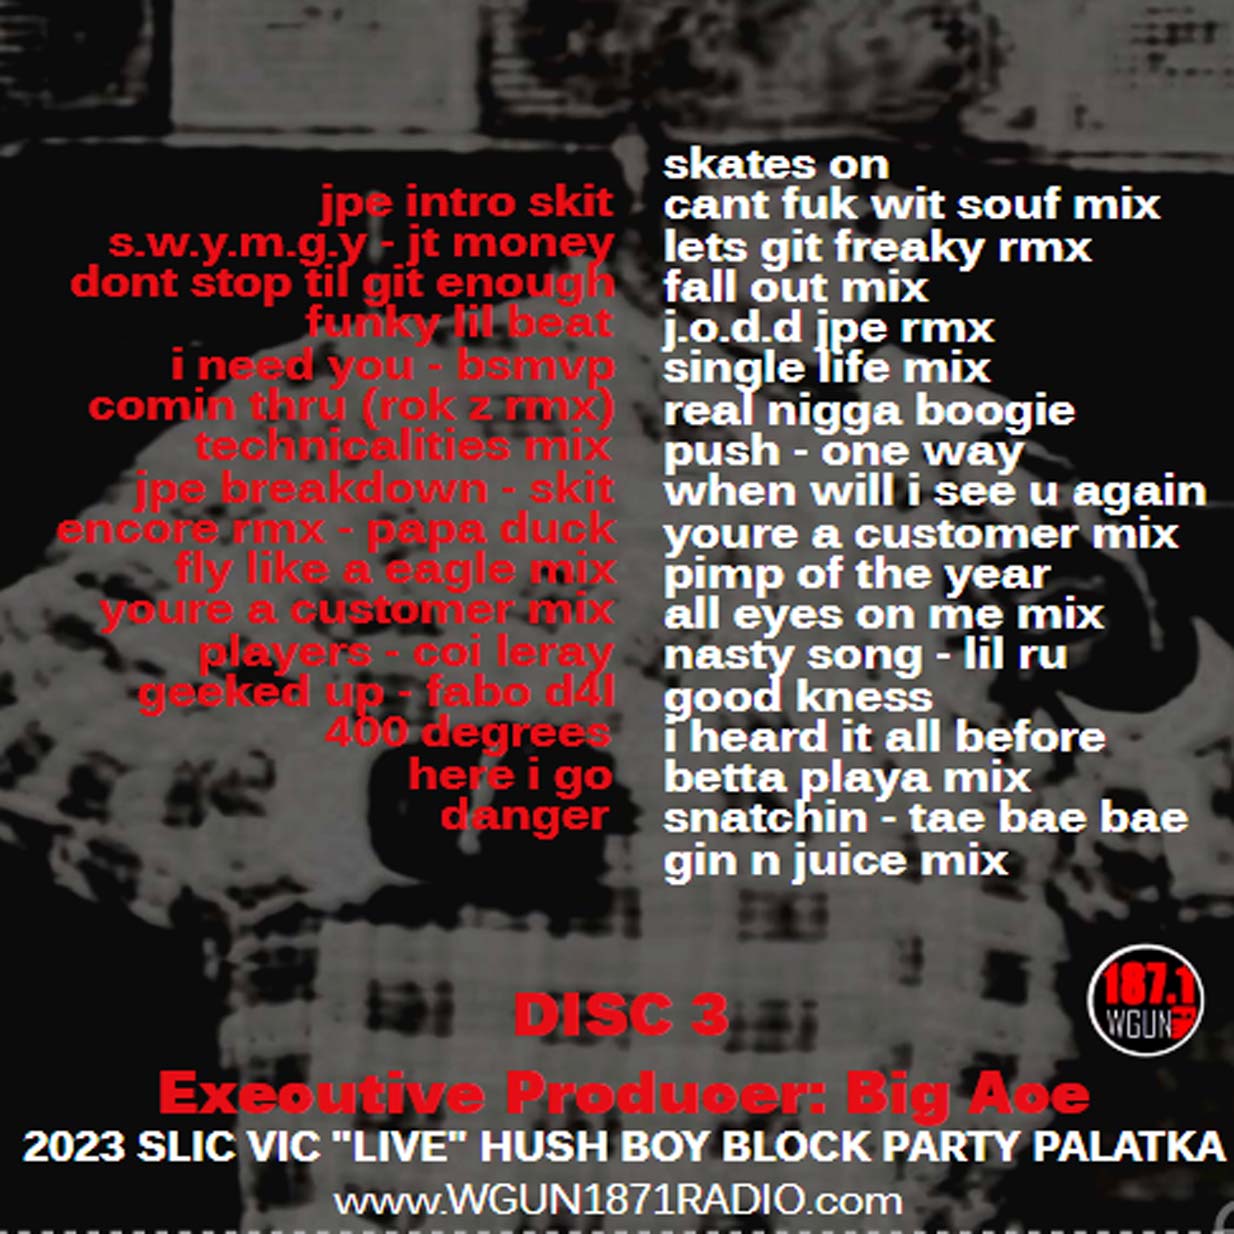 SLIC VIC - "LIVE" IN PALATKA HUSH BOY GDAY BASH c2023